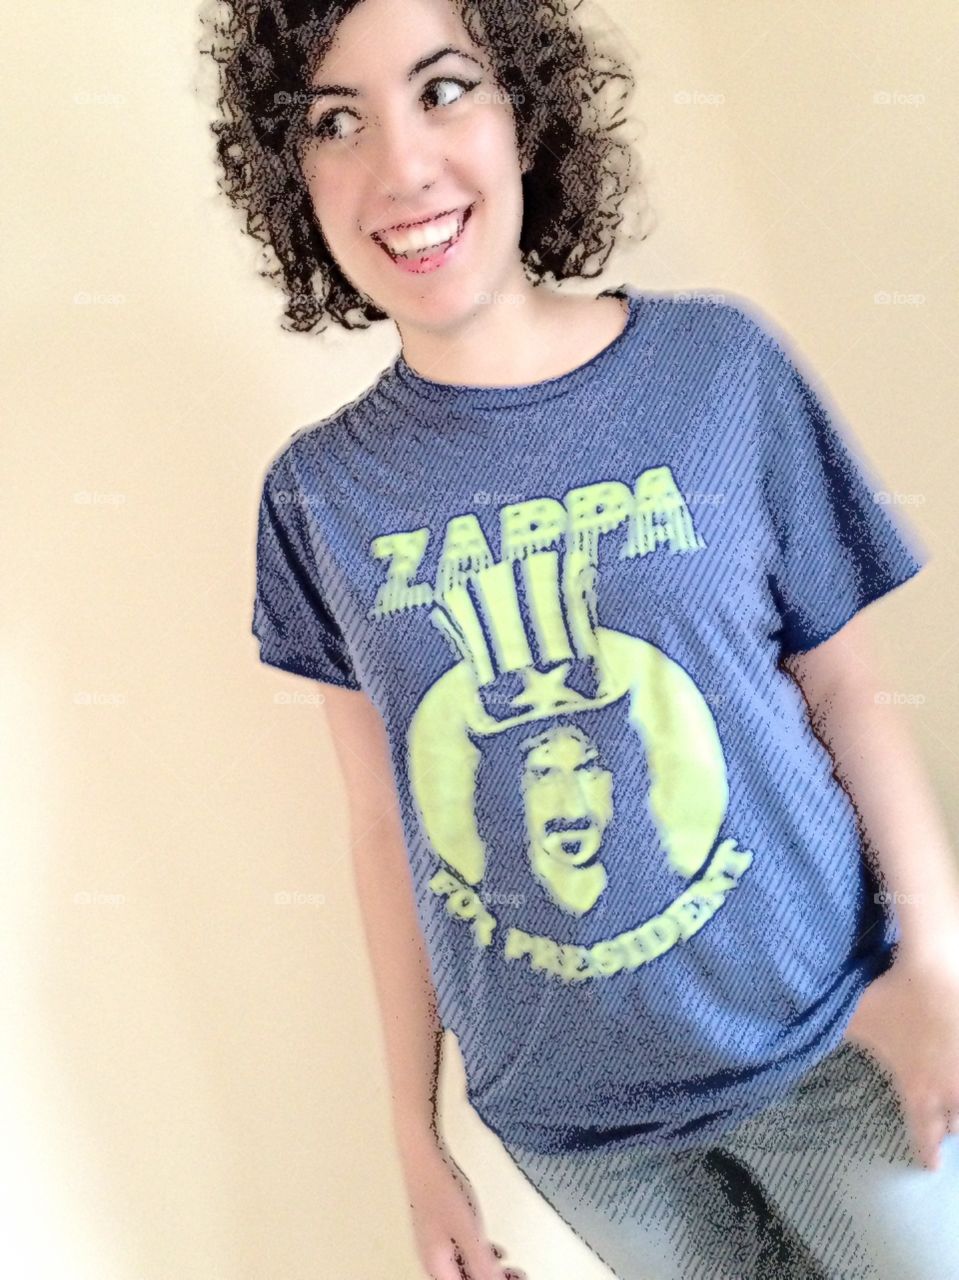 Zappa for President